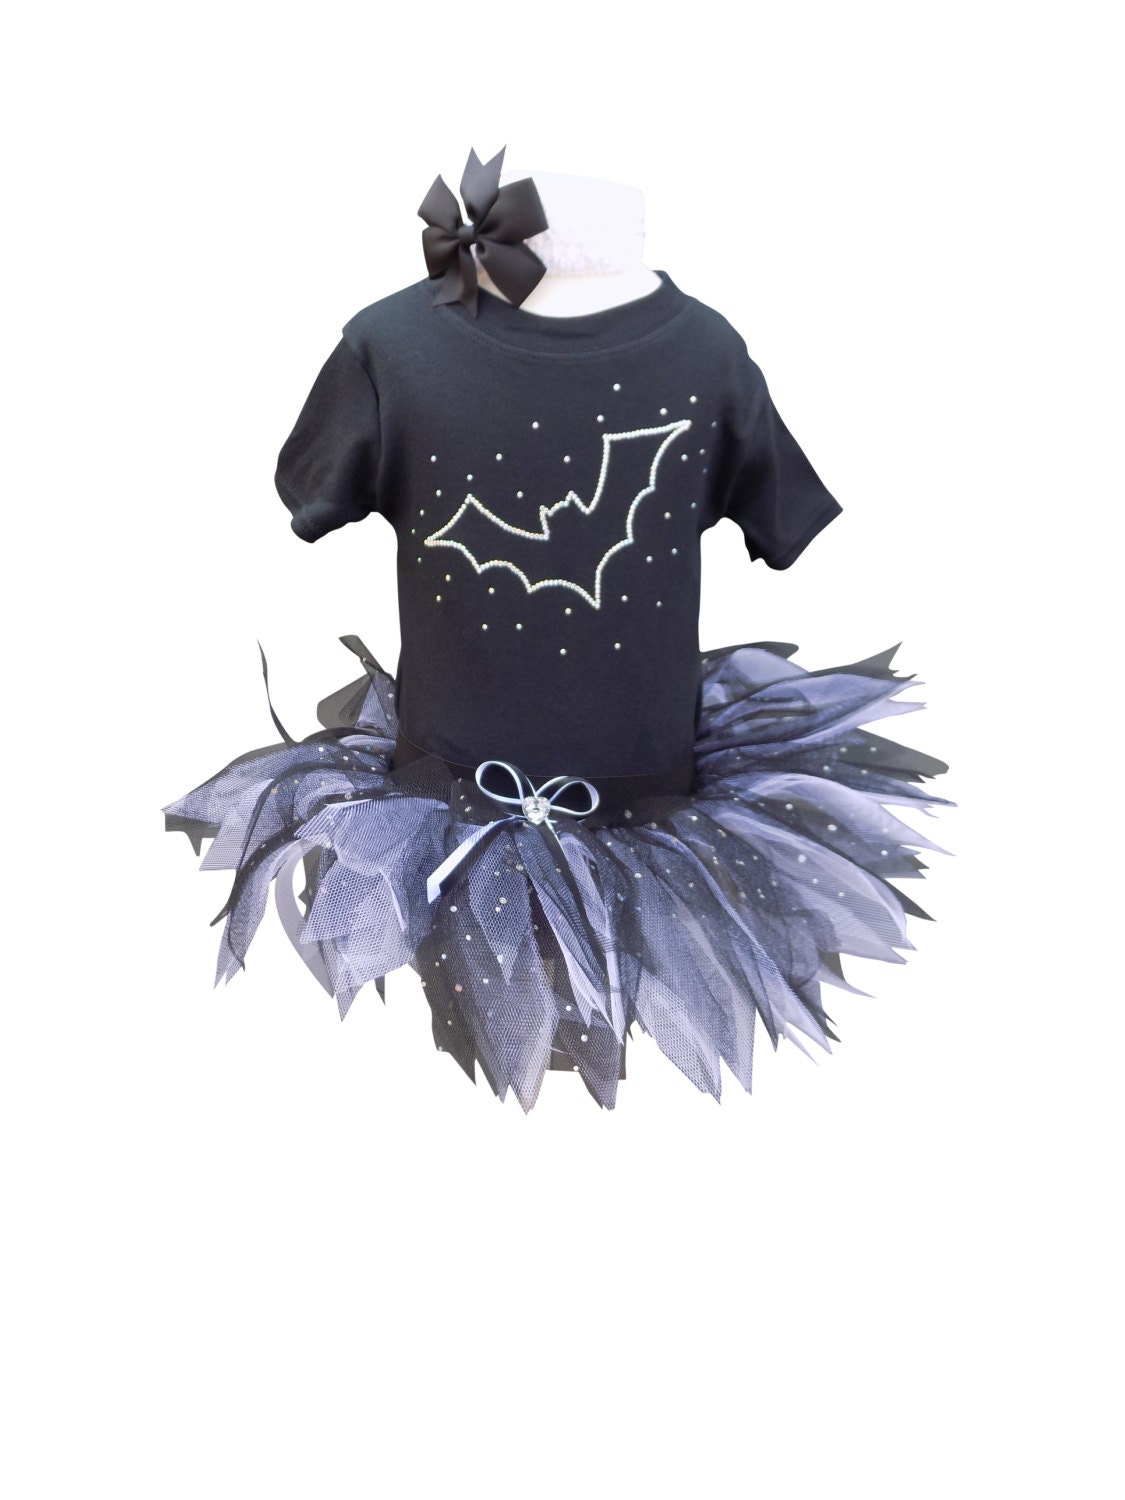 Kleinkind Baby Mädchen Halloween Outfits Kostüm Langarm Rüschen T-Shirt Kürbis Fledermaus Geist Tutu Rock Kleidung Set 18 Monate bis 6 Jahre 